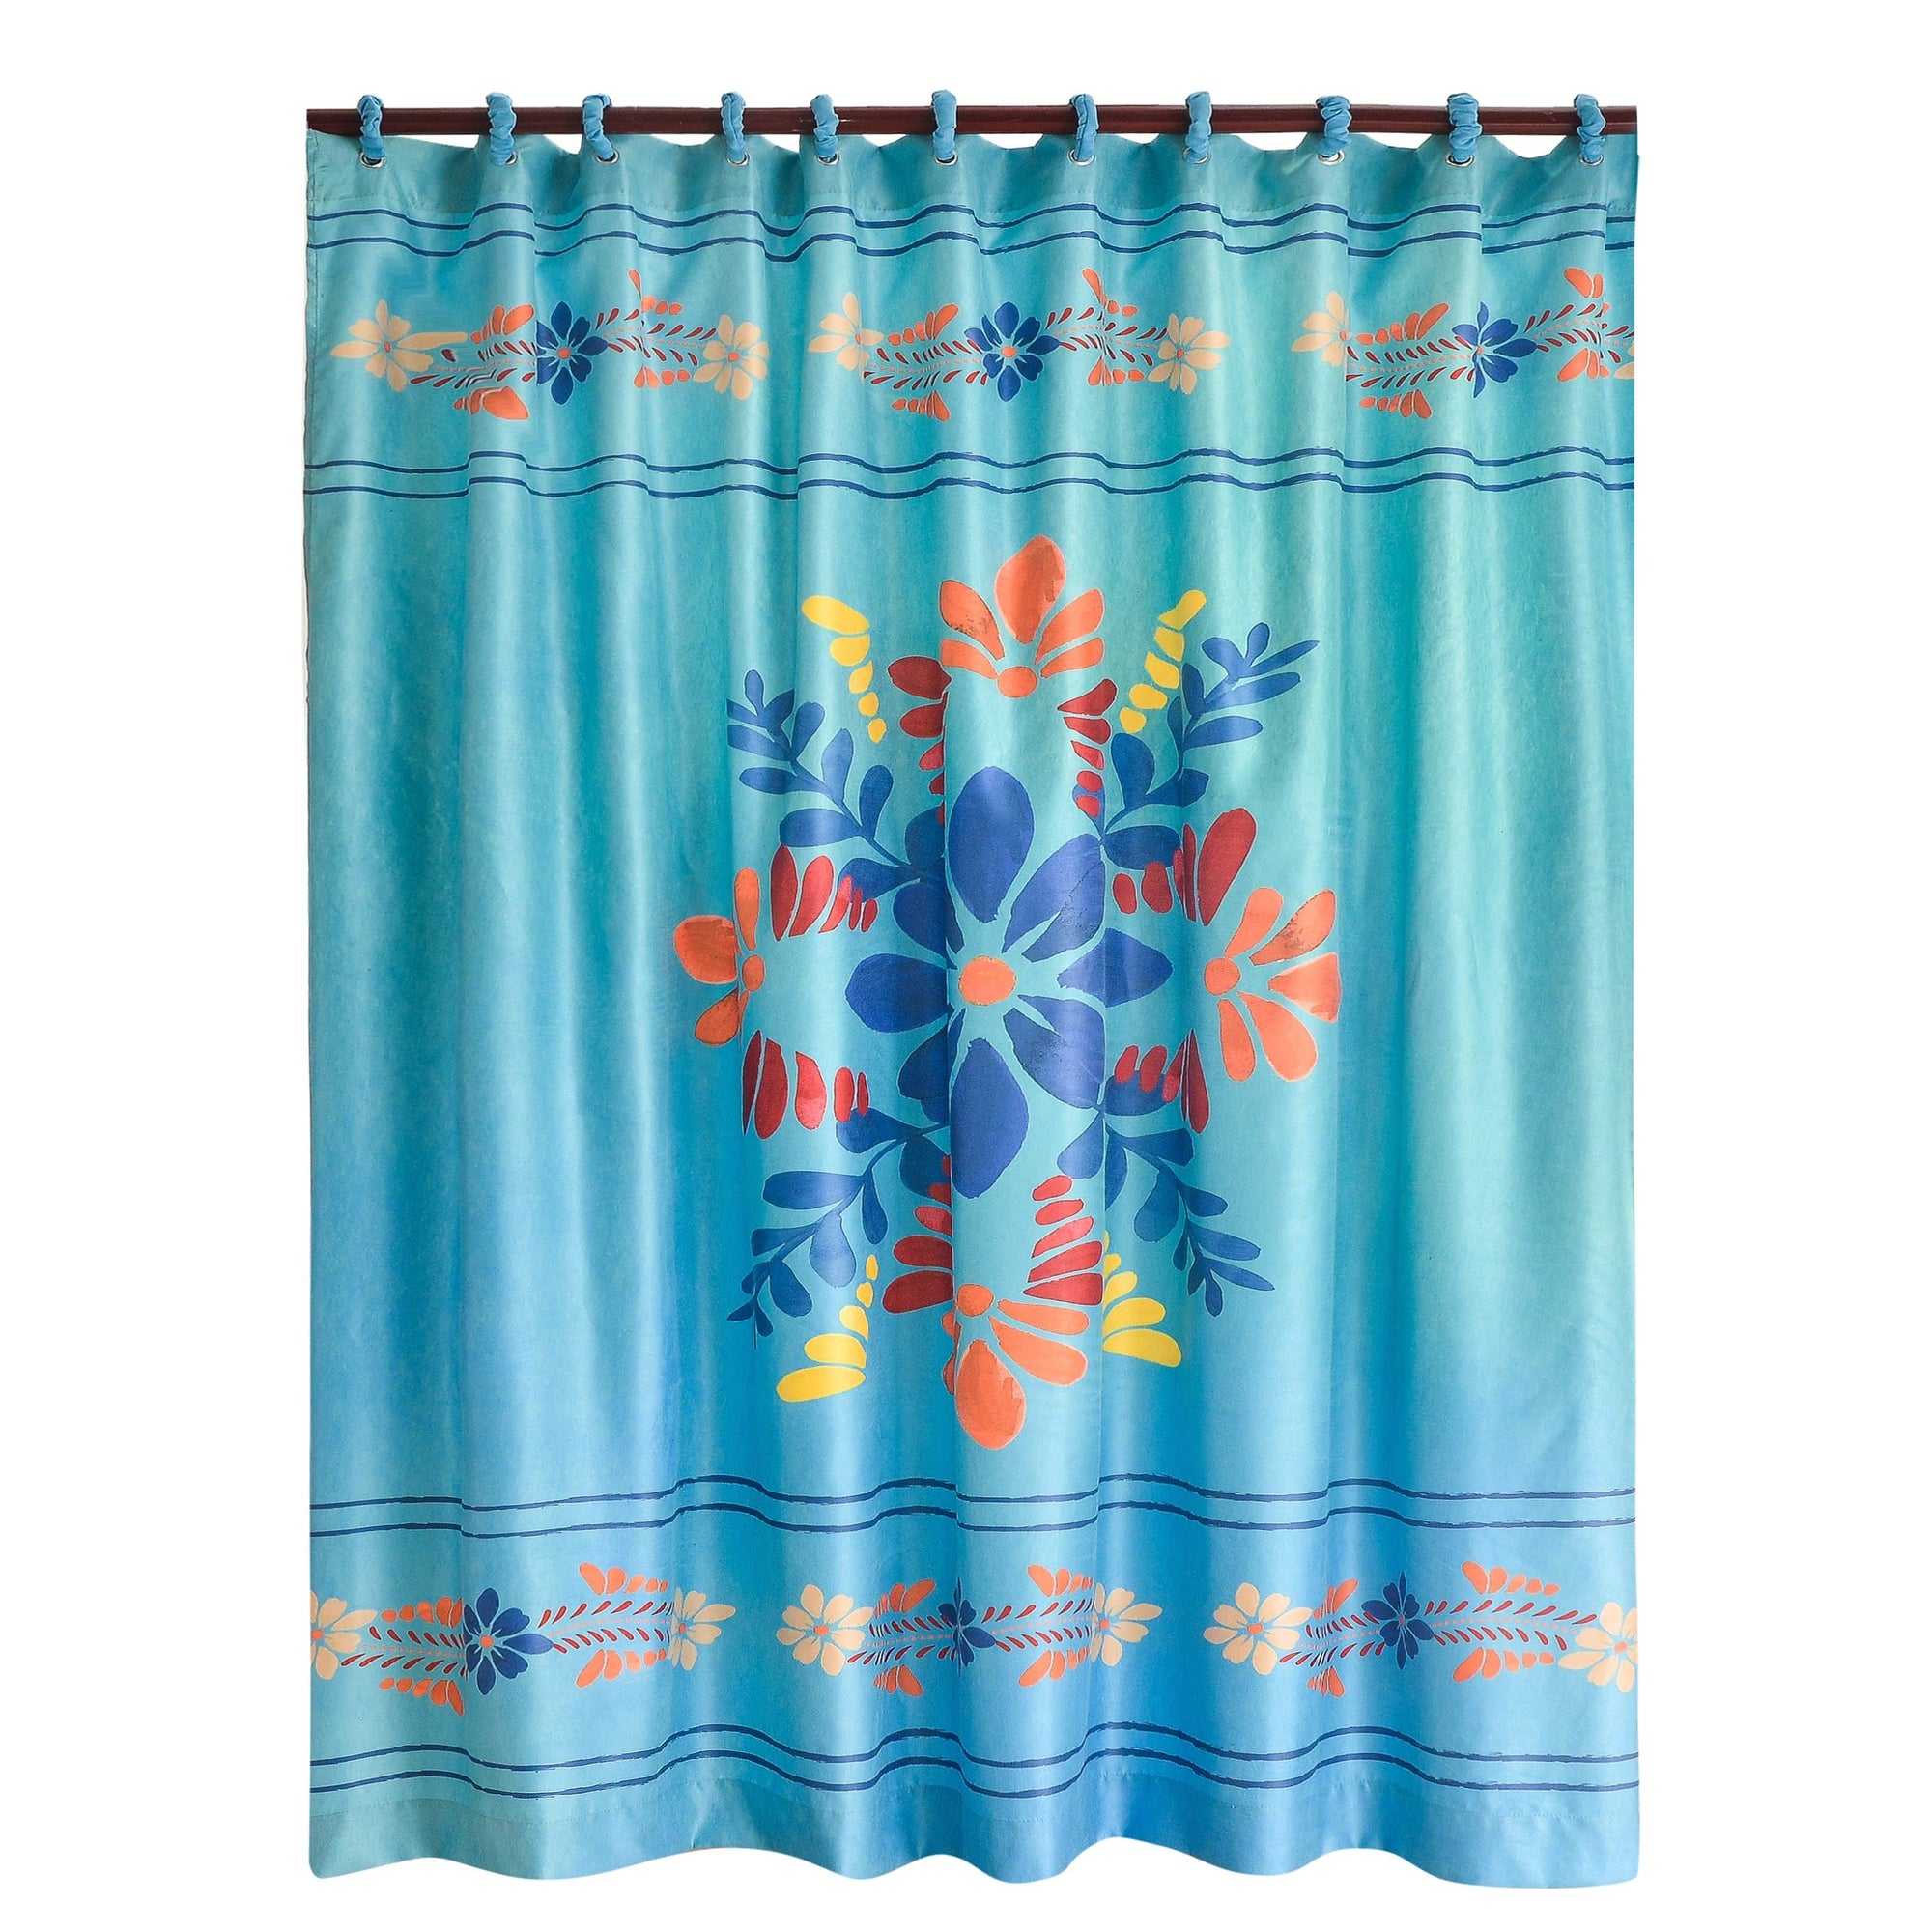 Bonita Shower Curtain, 72x72 Shower Curtain